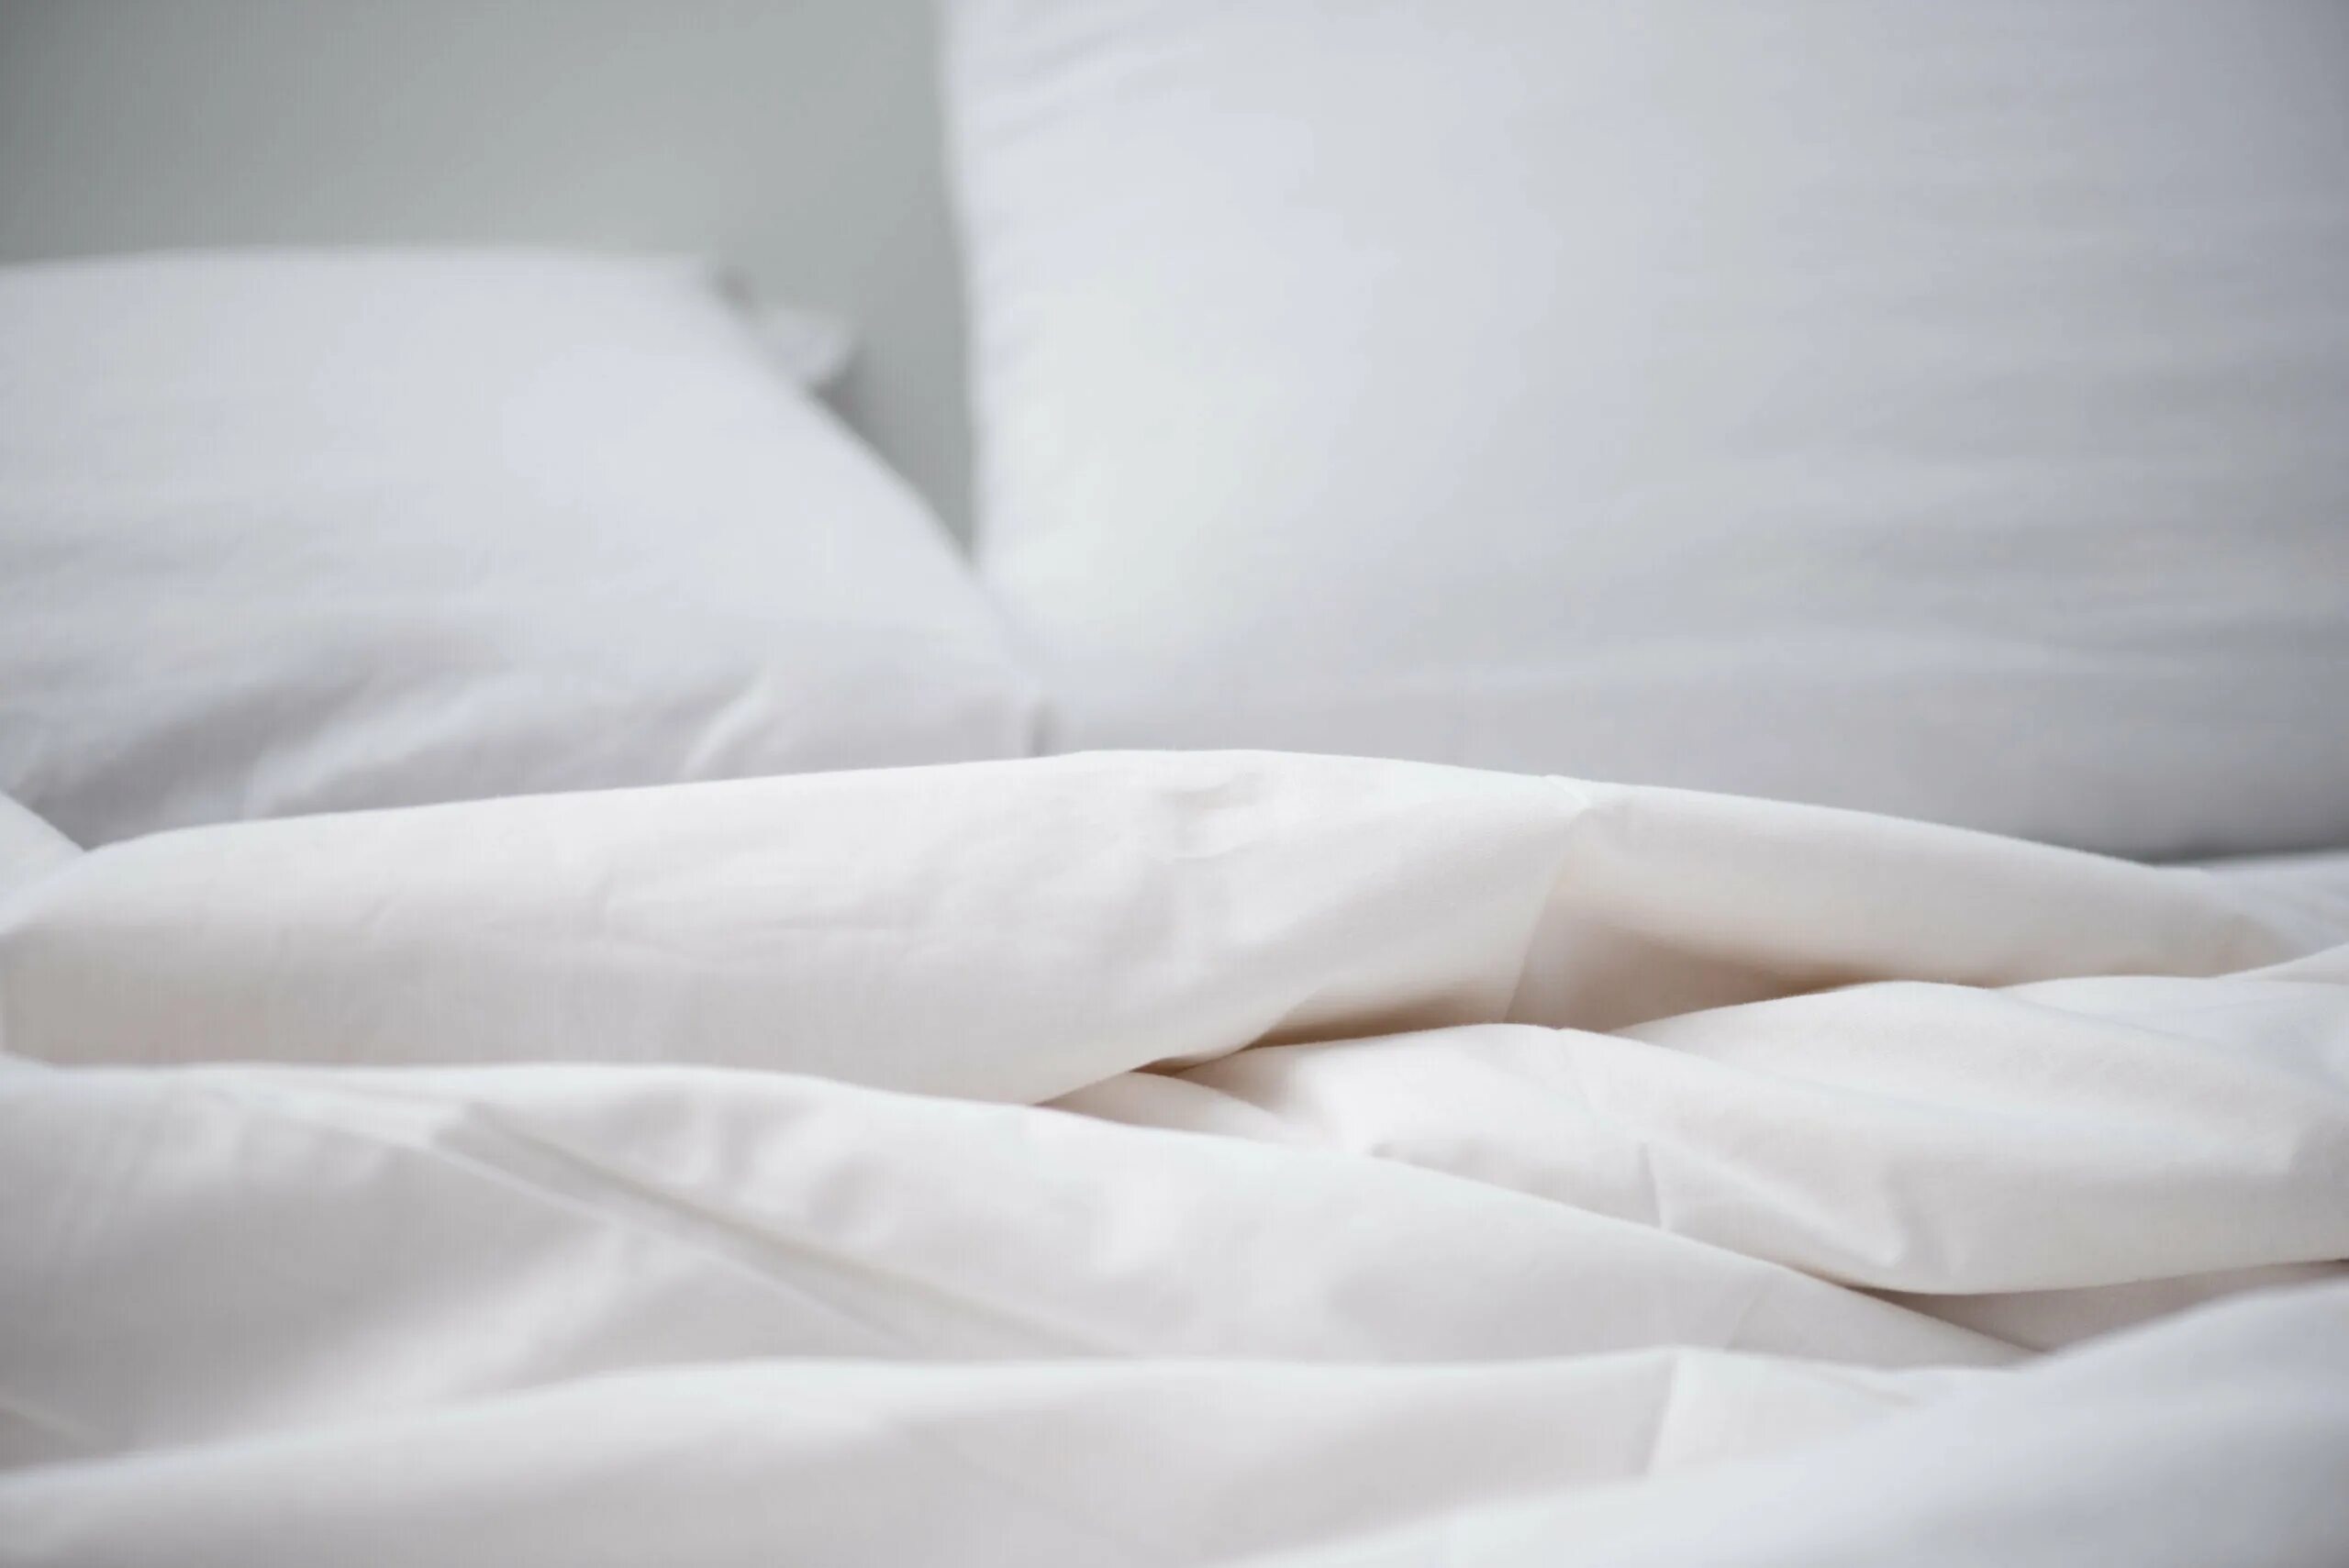 Біла з. Пустая белая постель. Кровать бела постель и одеяло. Белое одеяло на кровати. Расправленная кровать.